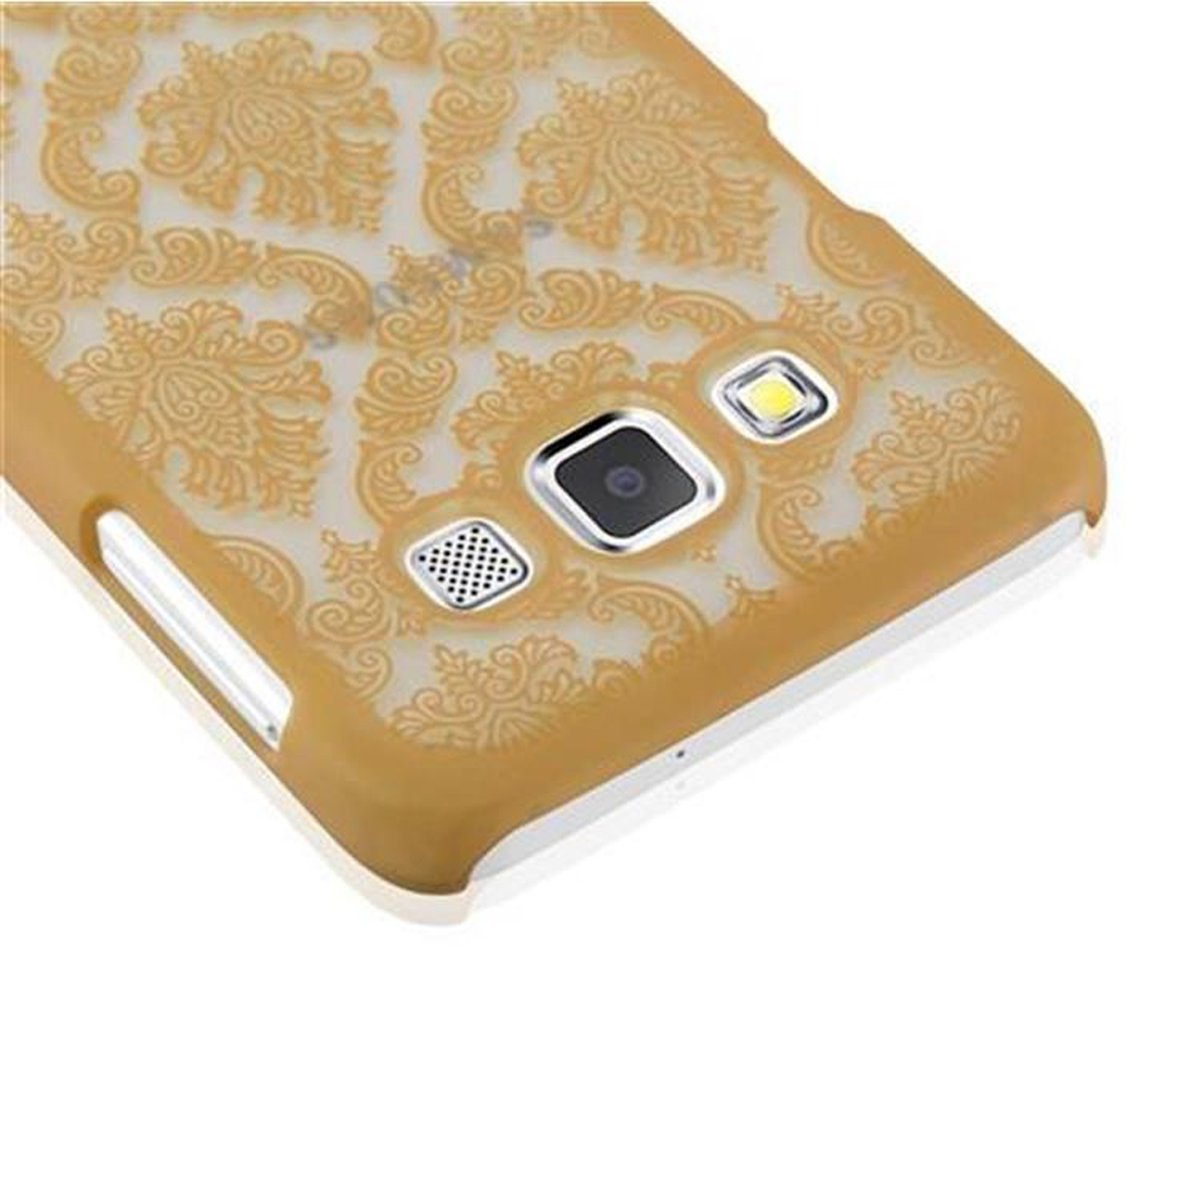 GOLD Design, Galaxy CADORABO A3 2015, Henna Blumen in Paisley Samsung, Hard Backcover, Case Hülle